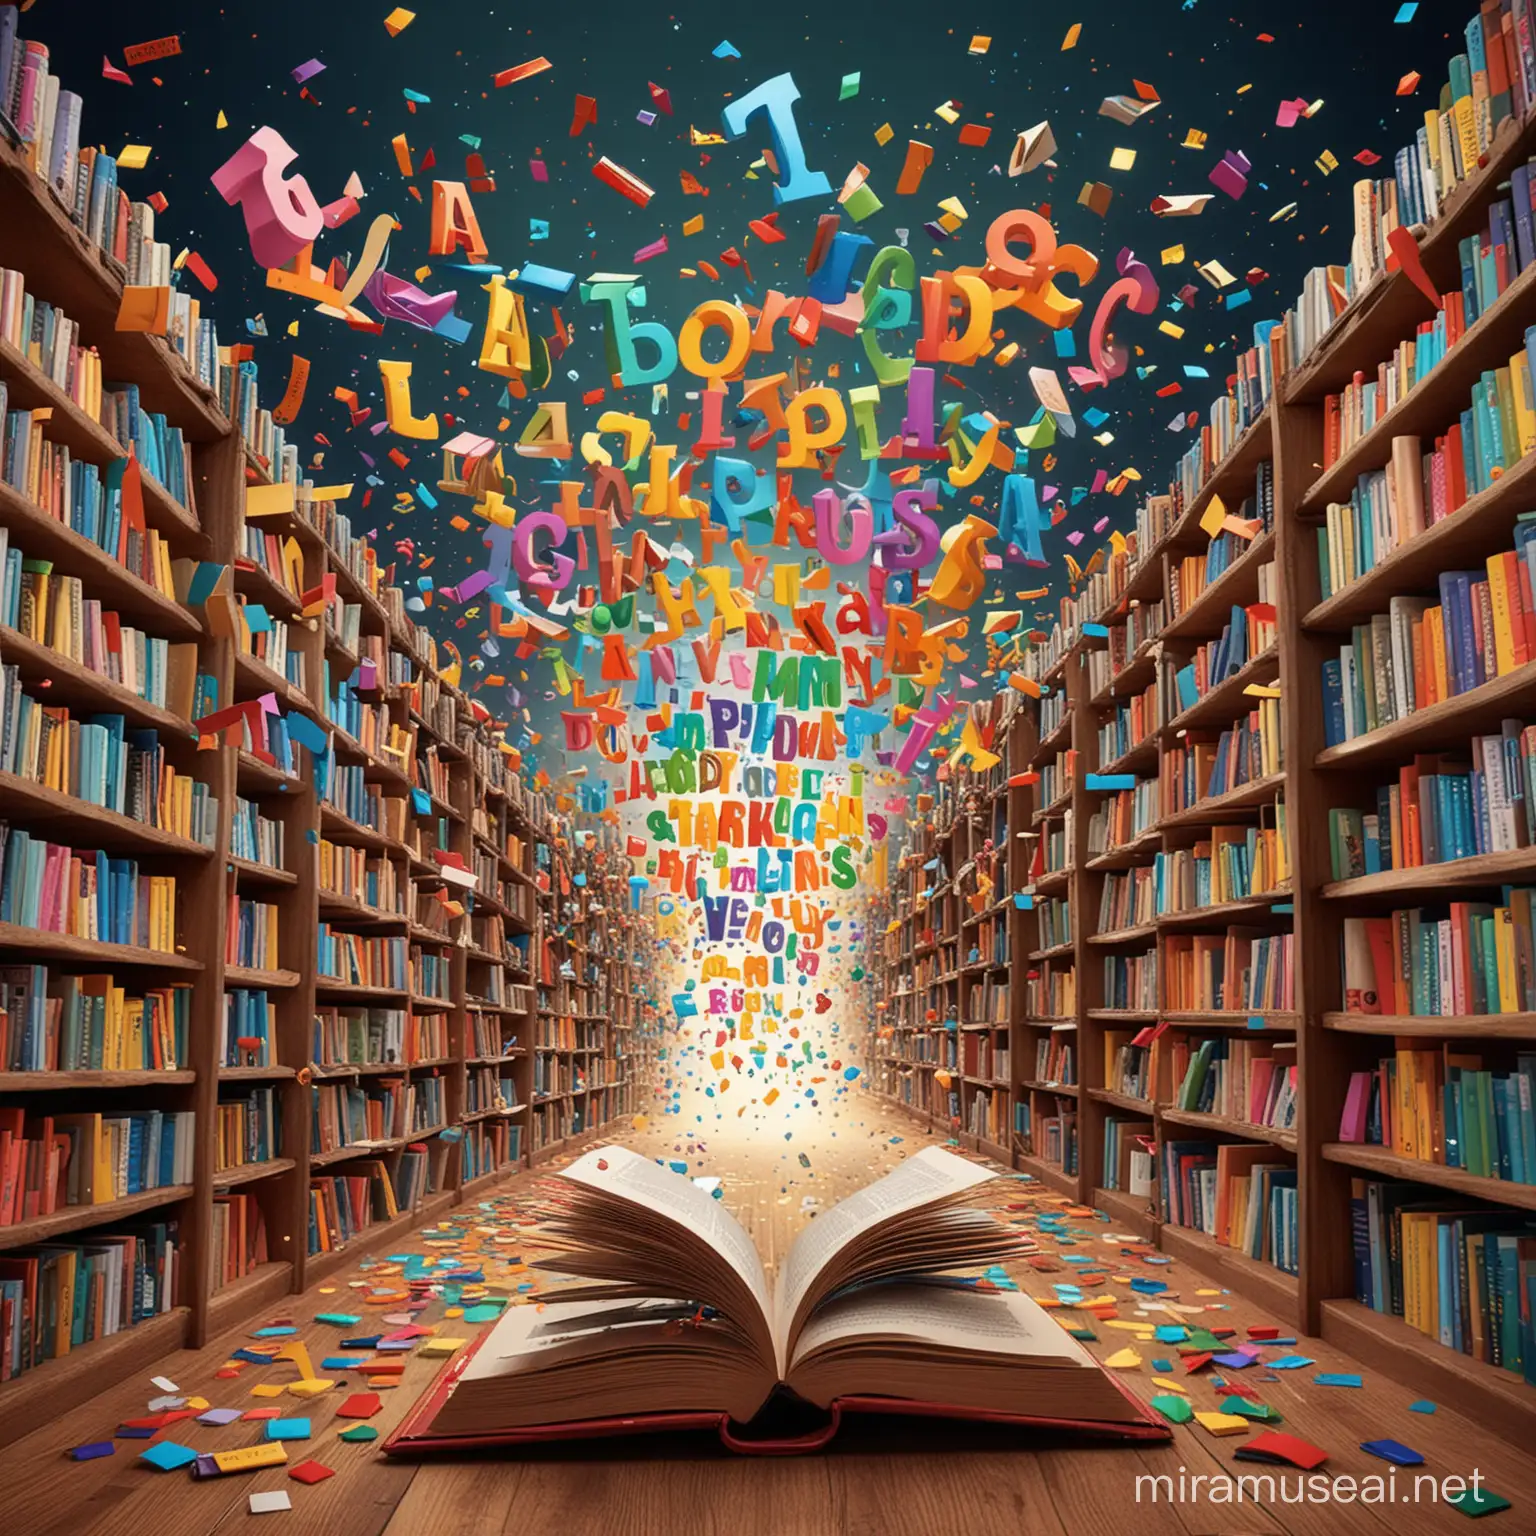 Renkli kelimelerin, harflerin, cümlelerin havada uçuştuğu, rengarenk bir kitap kütüphanede rengarenk bir dekoru olan canlı çarpıcı etkileyici renkleri olan bir kitap ve üzerincde renkli harfler uçuşan bir illustratör ffotoğraf